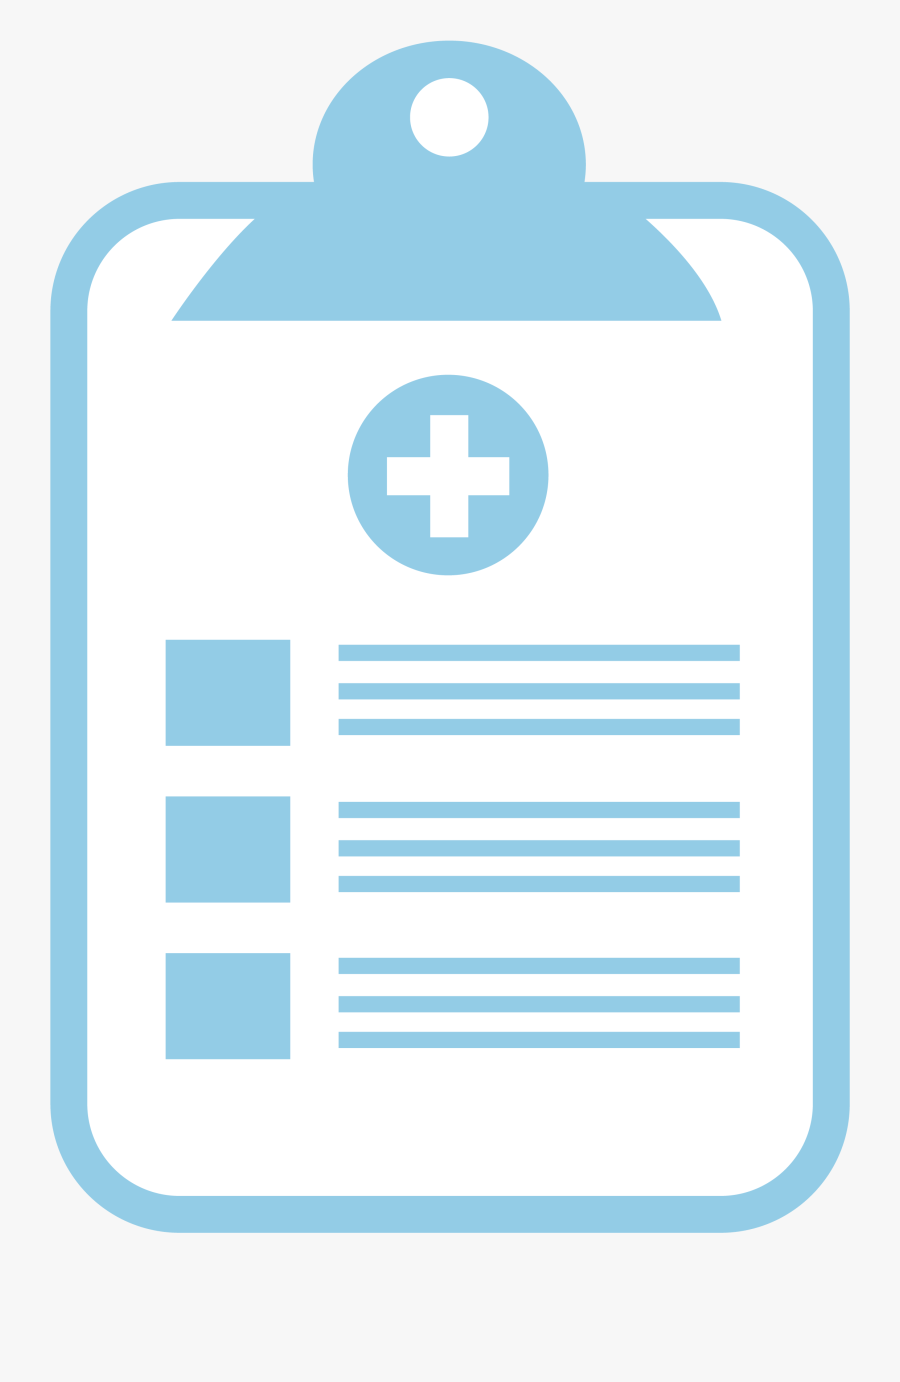 Hras - Registro Medico Em Png, Transparent Clipart